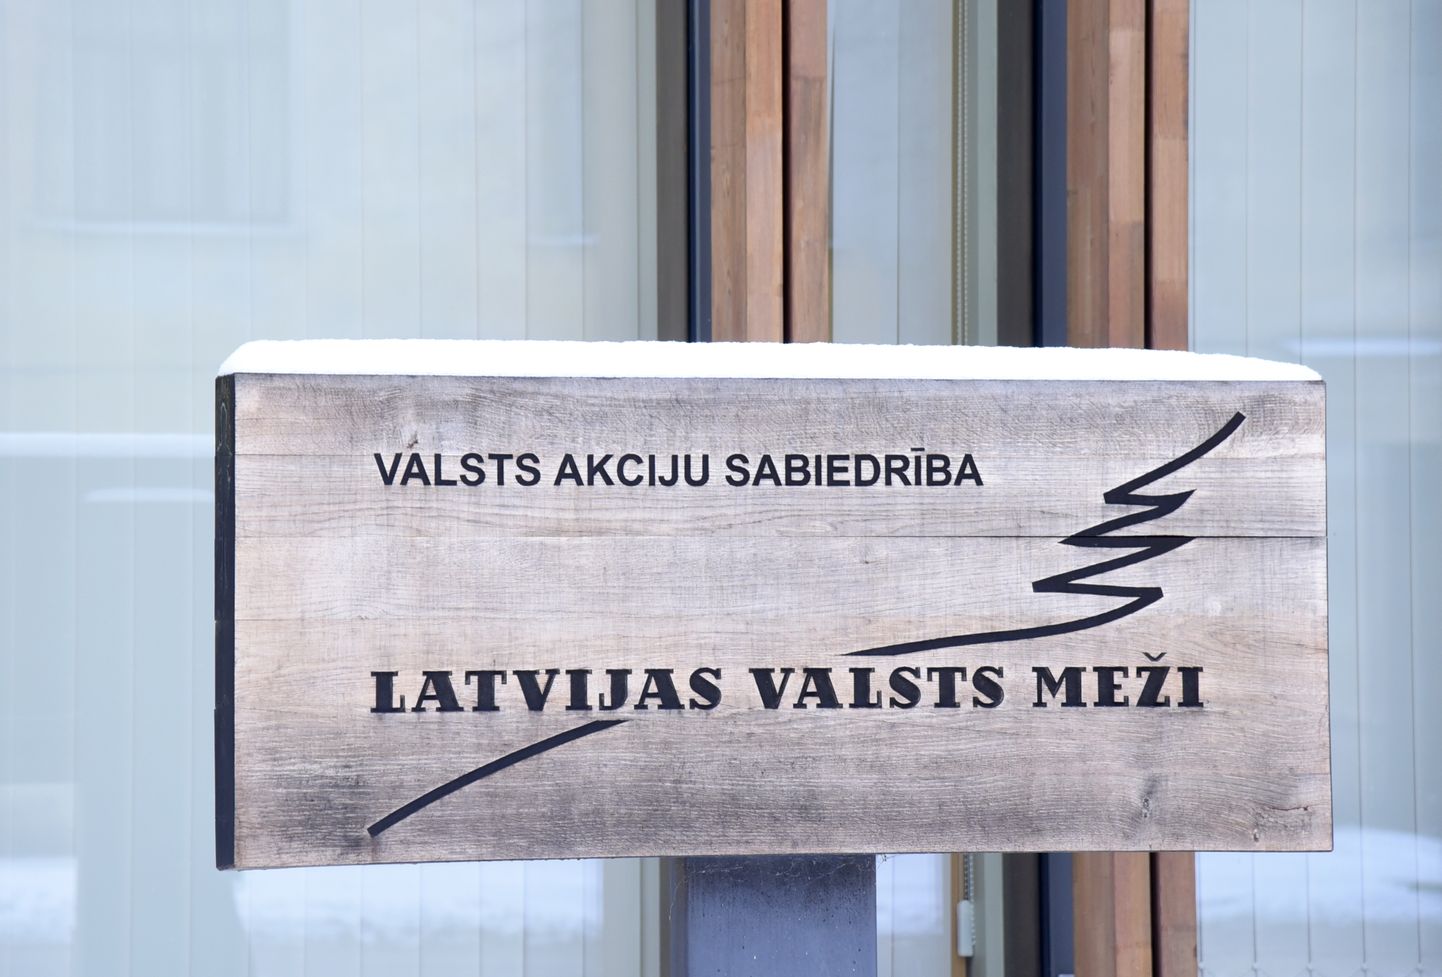 Вывеска предприятия Latvijas valsts meži